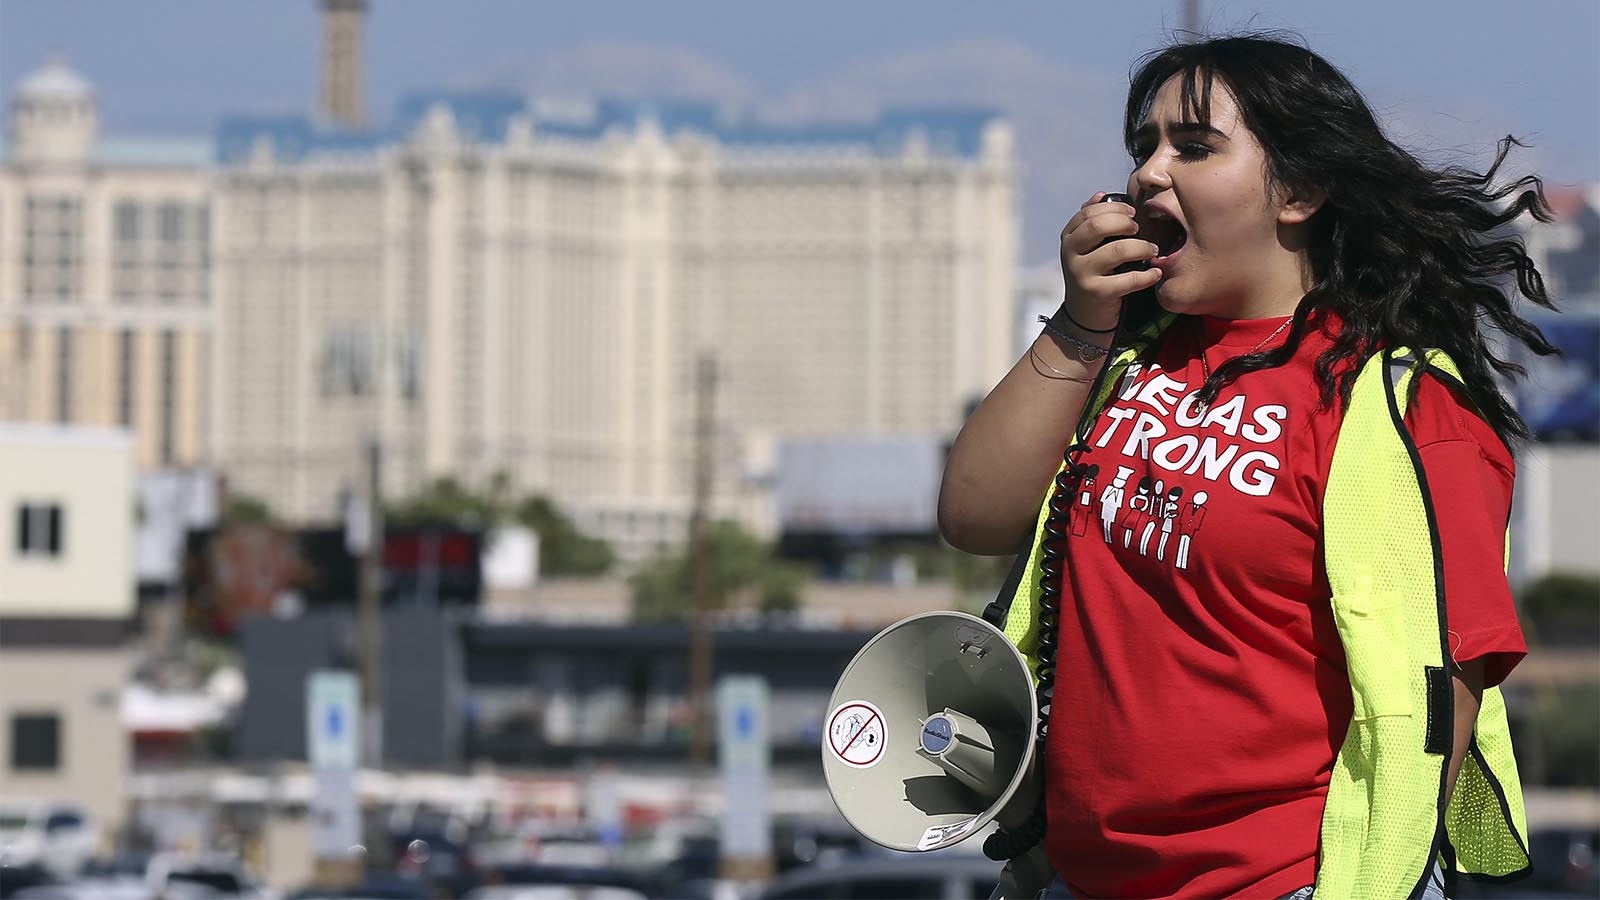 מתנדבת מהאיגוד עובדי המזון בלאס וגאס קוראת לעובדים לבוא ולהצביע בעד השביתה שתיערך בעיר (AP Photo/Isaac Brekken)